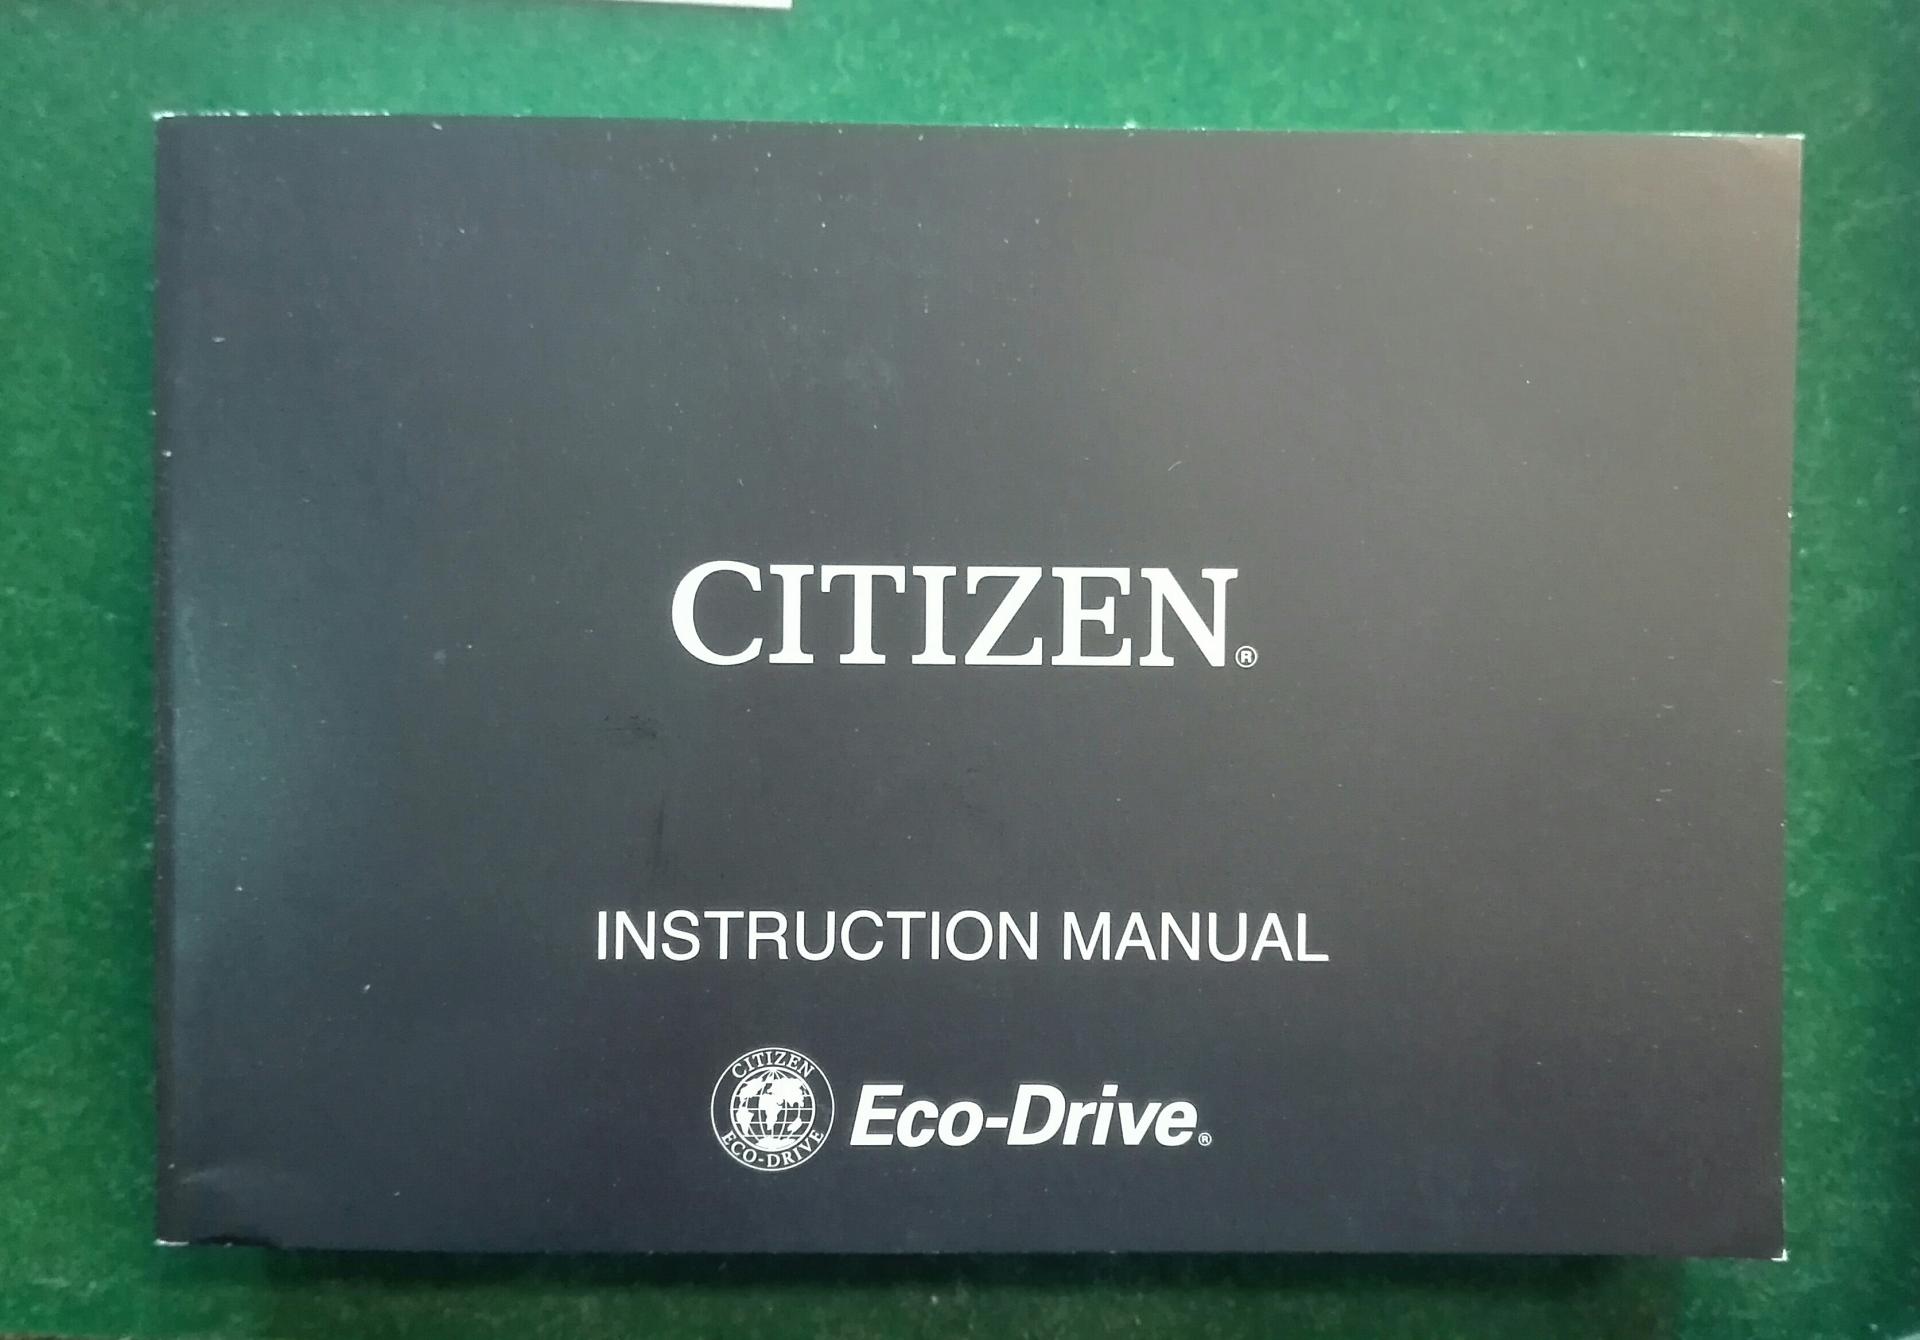 Manual de instrucciones de este reloj Citizen